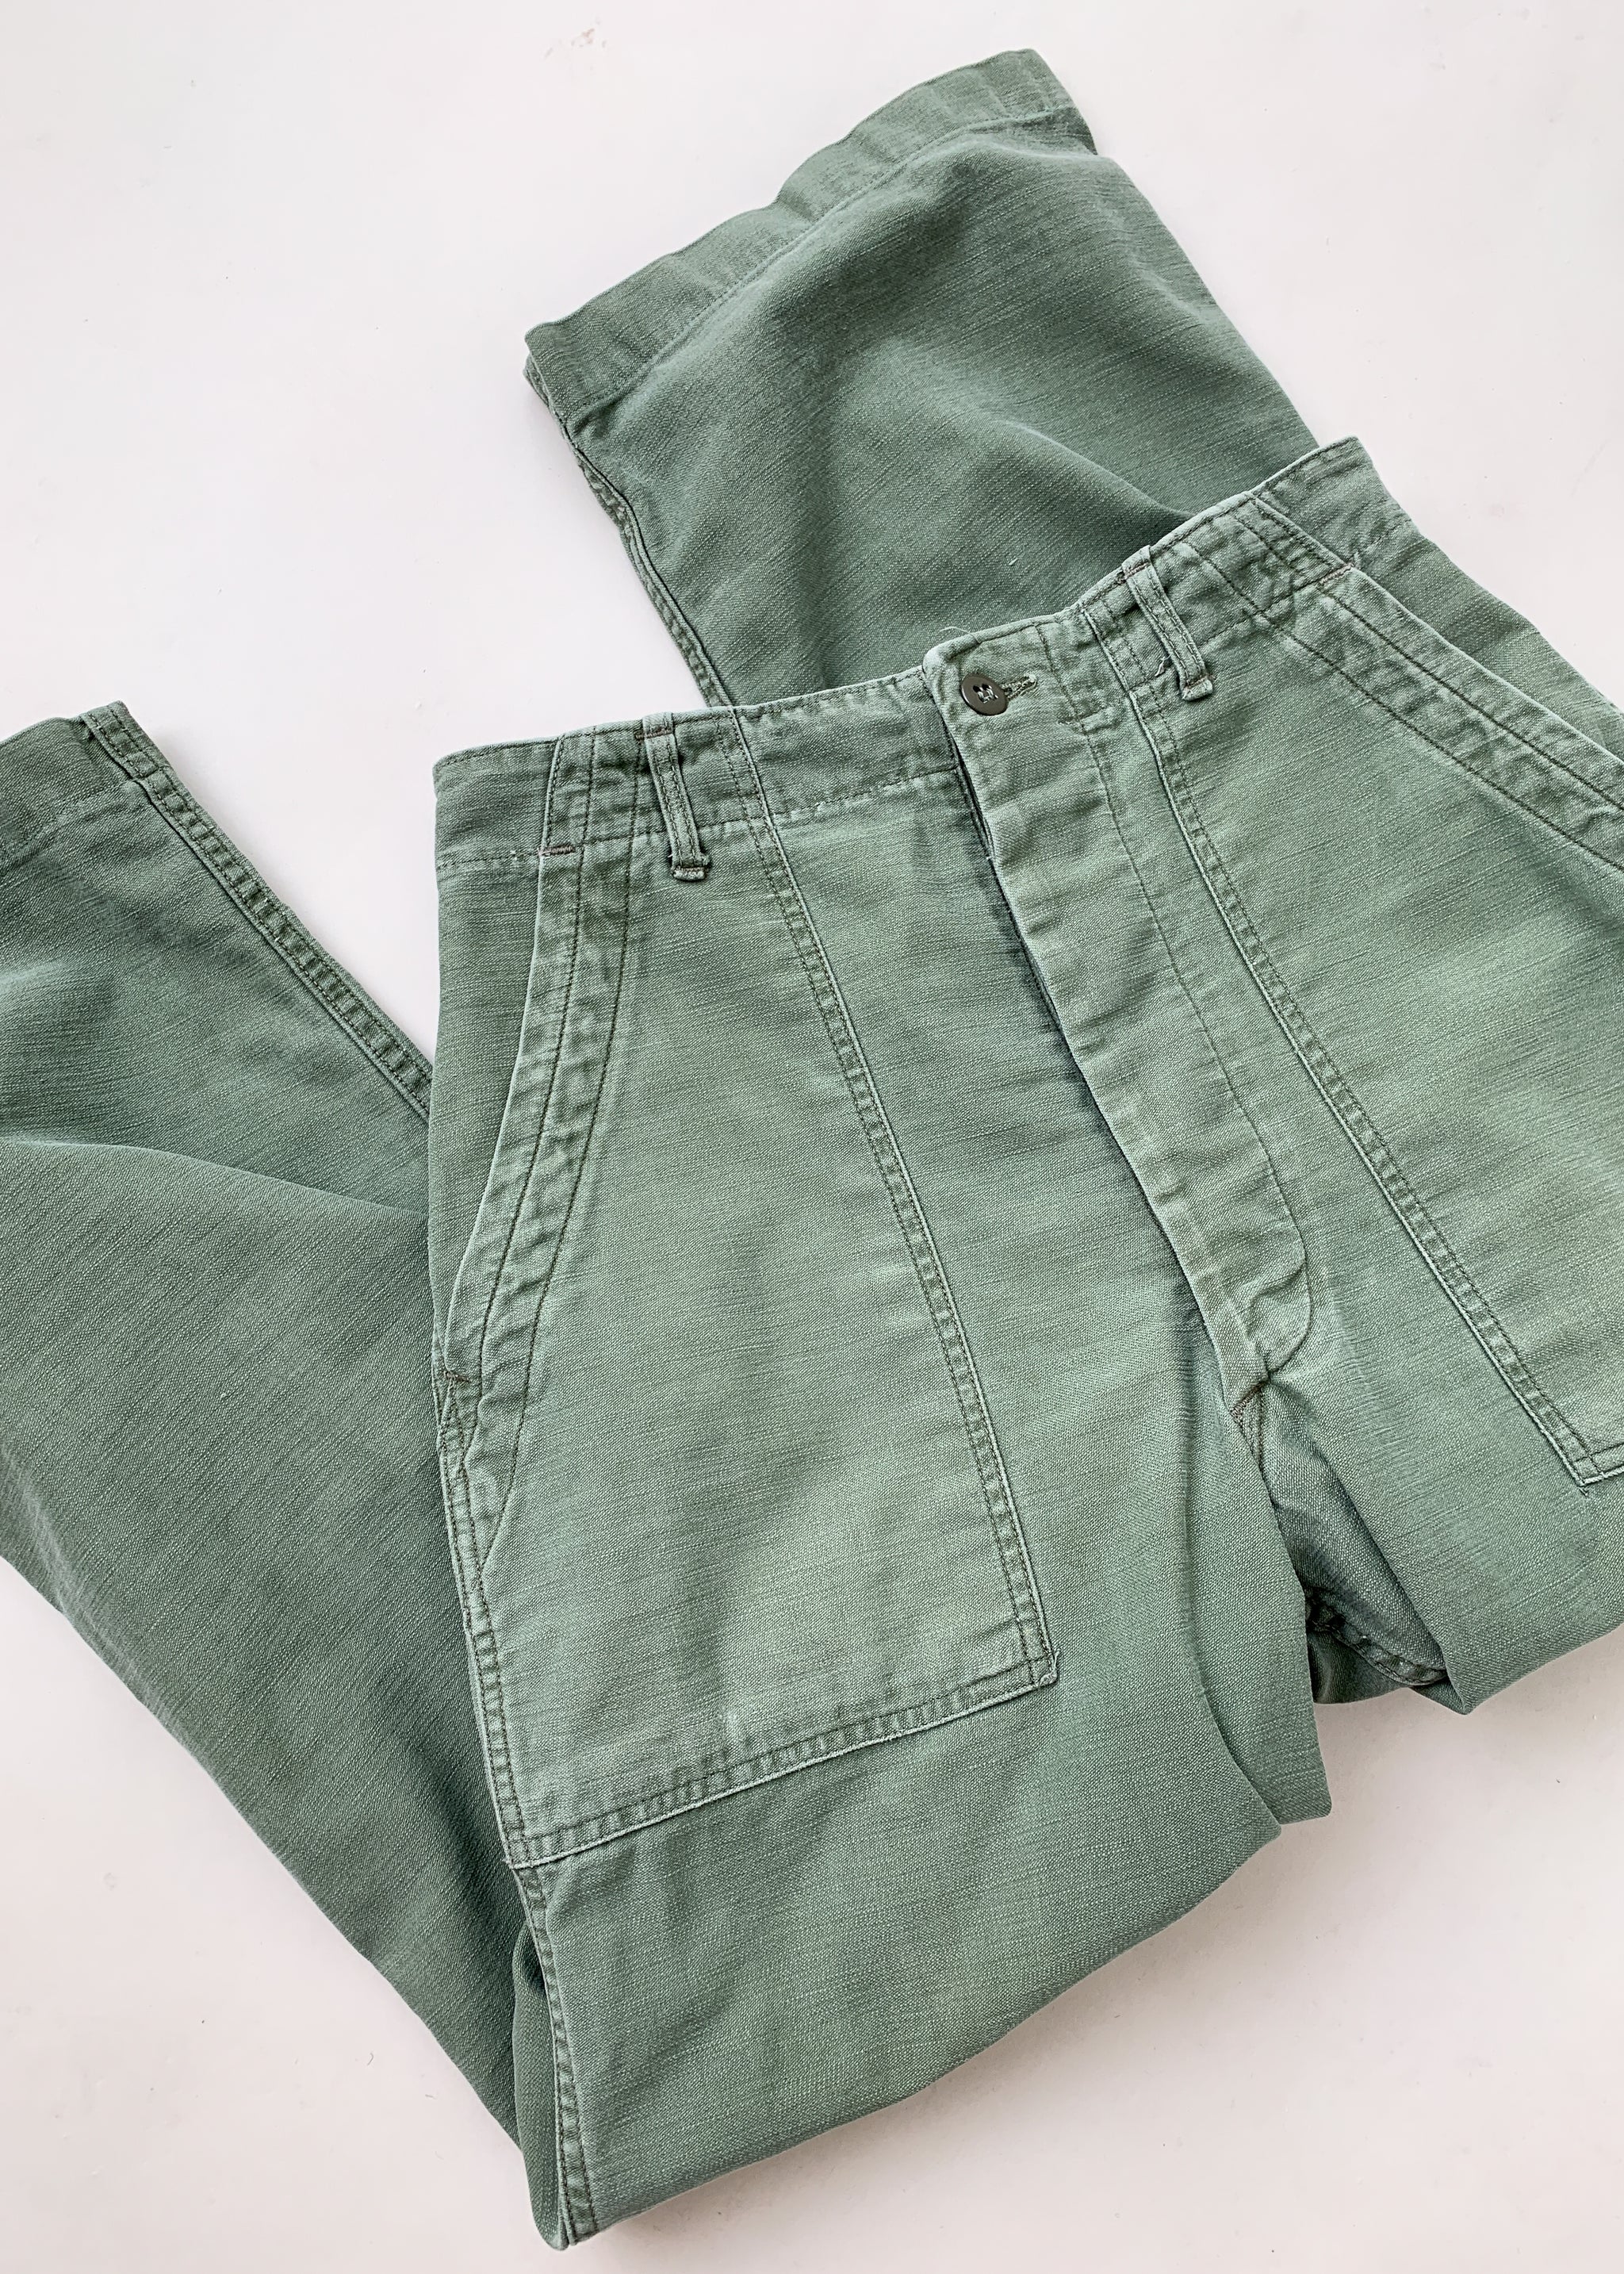 Vintage 1960s US Army Fatigue Pants - Raleigh Vintage